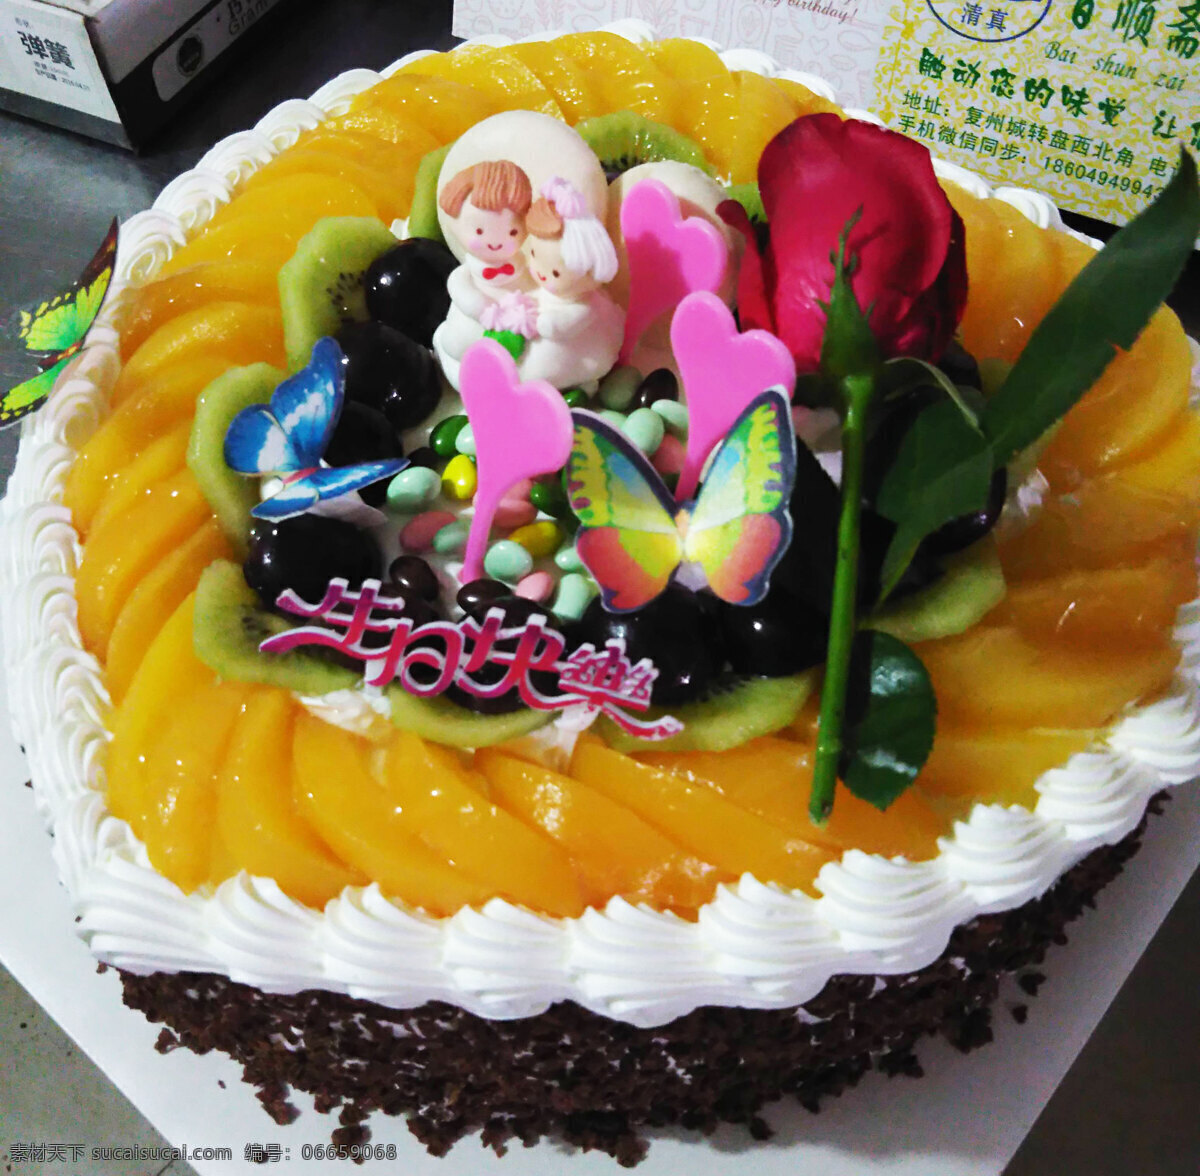 水果蛋糕 水果生日蛋糕 巧克力蛋糕 生日蛋糕 水果 果膏生日蛋糕 餐饮美食 西餐美食